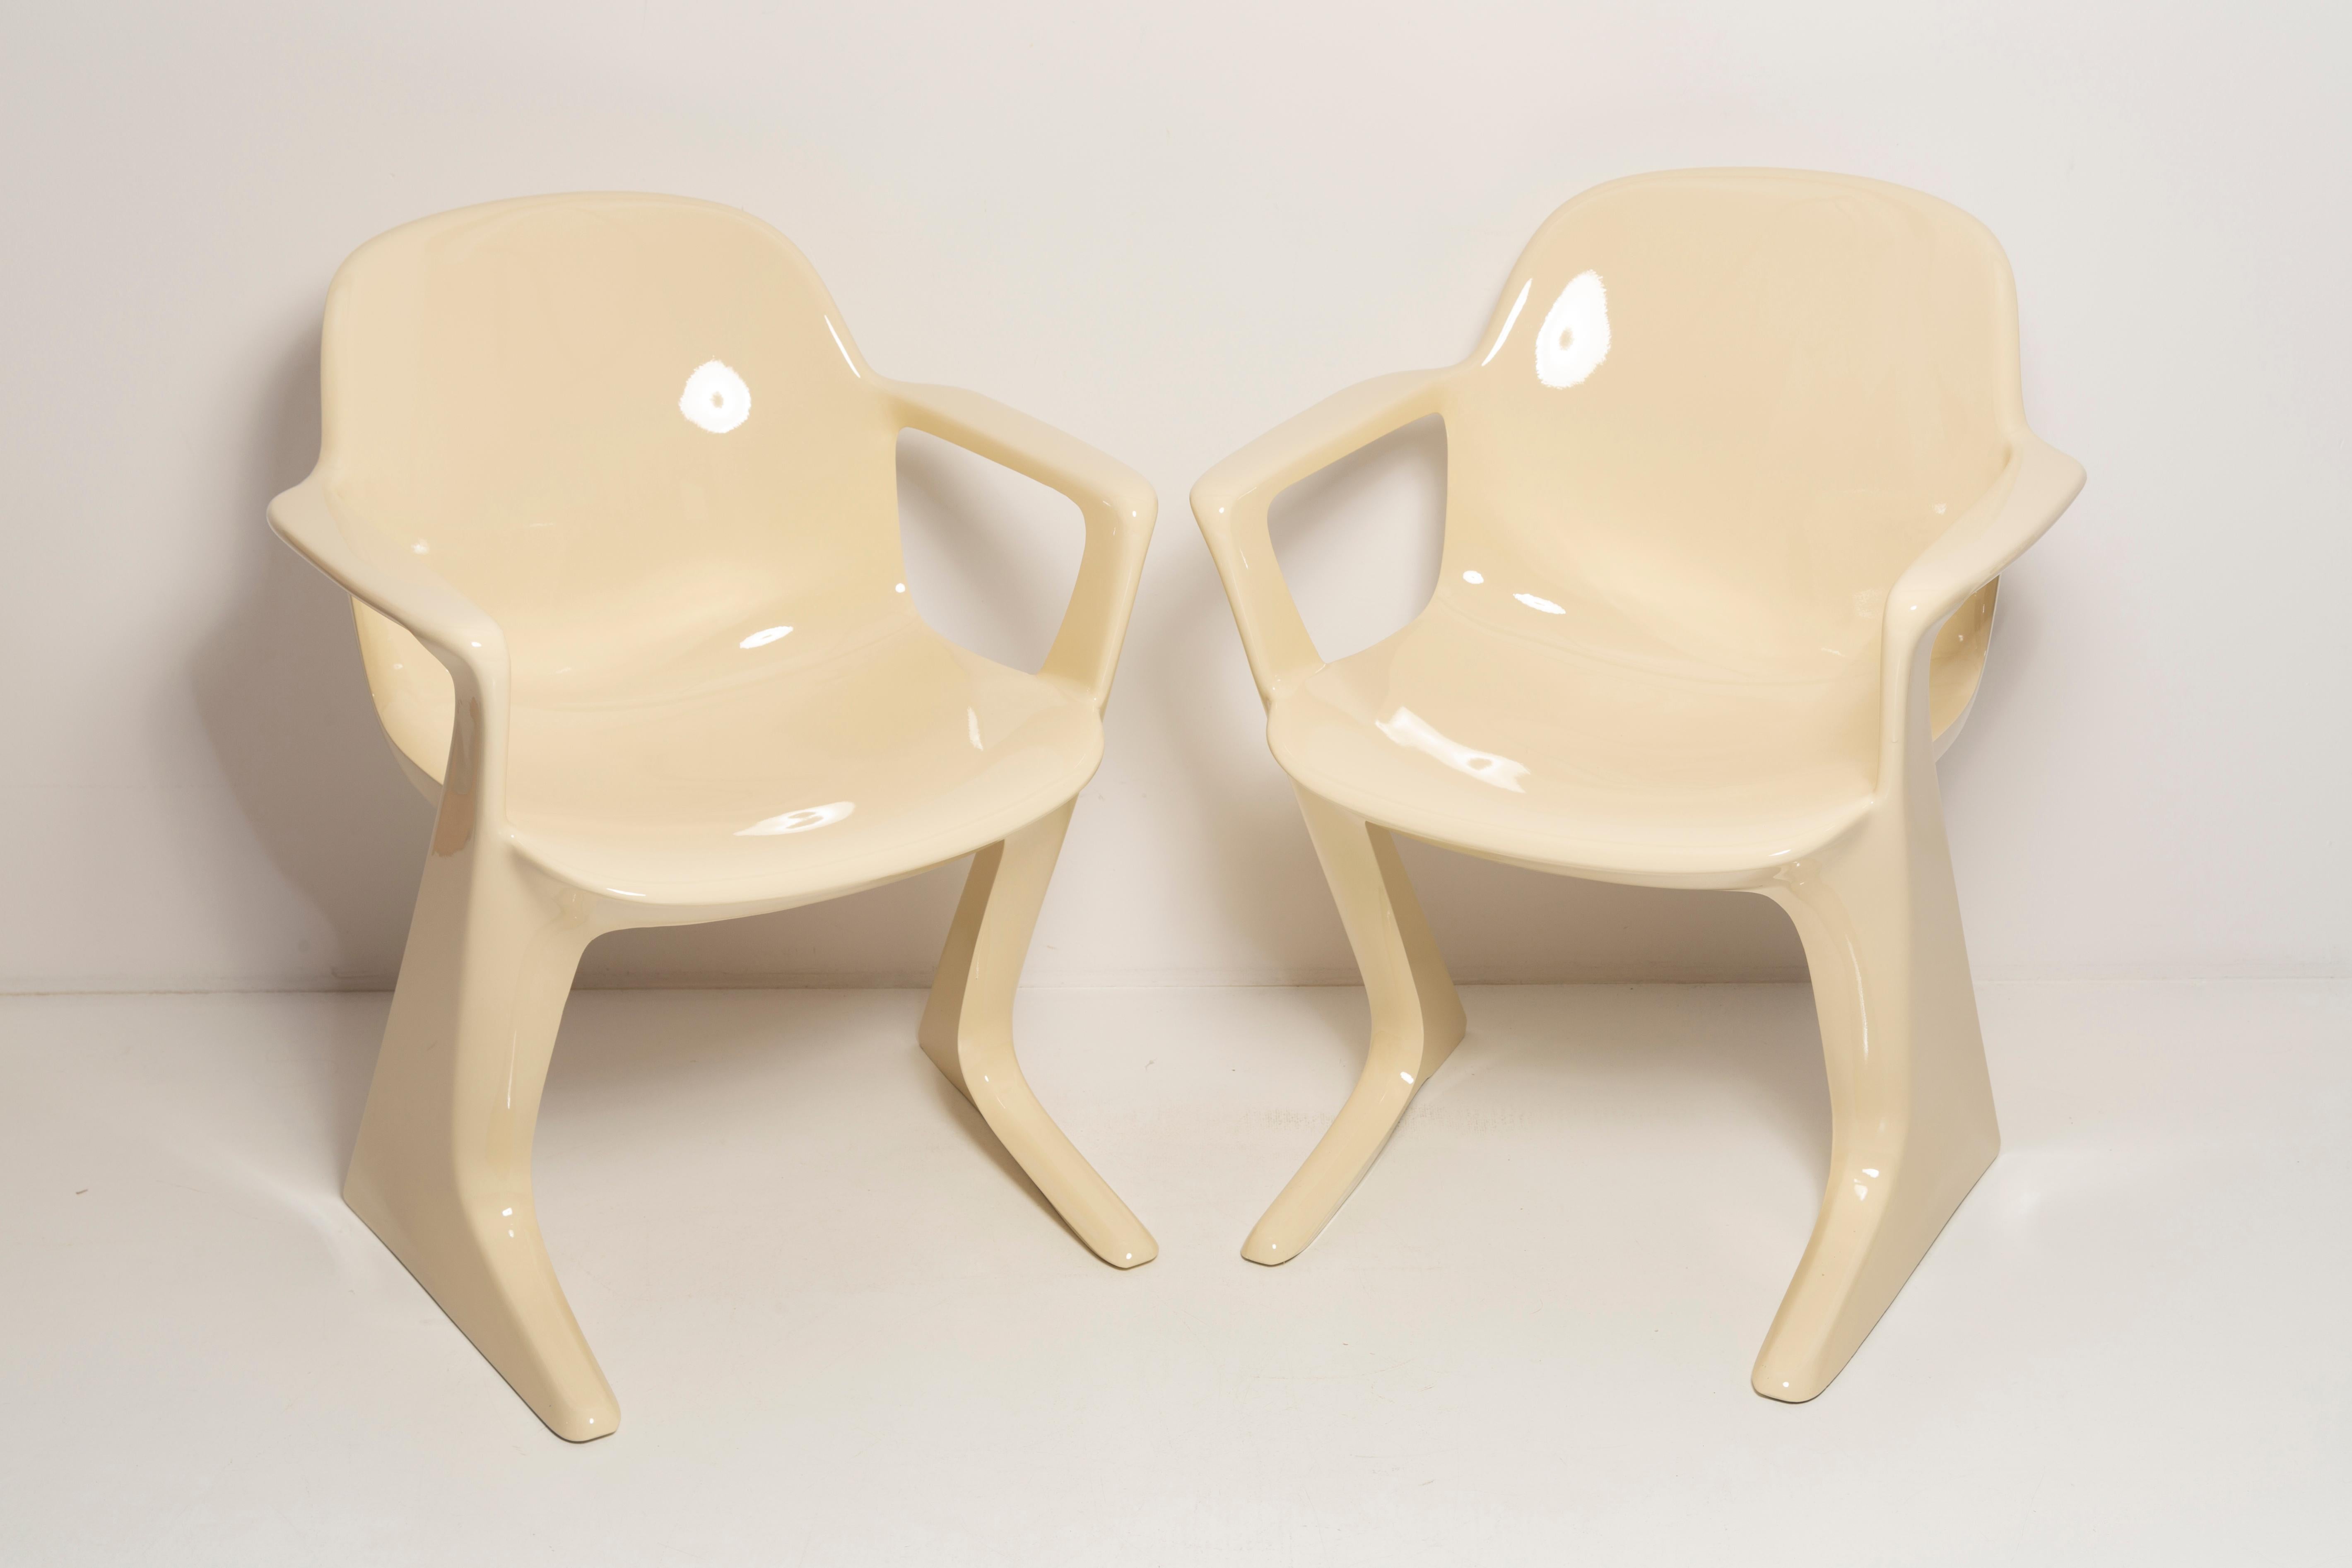 Ce modèle est appelé Z-chair. Conçue en 1968 en RDA par Ernst Moeckl et Siegfried Mehl, version allemande de la chaise Panton. Également appelée chaise kangourou ou chaise variopur. Produit en Allemagne de l'Est.

La z.stuhl, conçue par Ernst